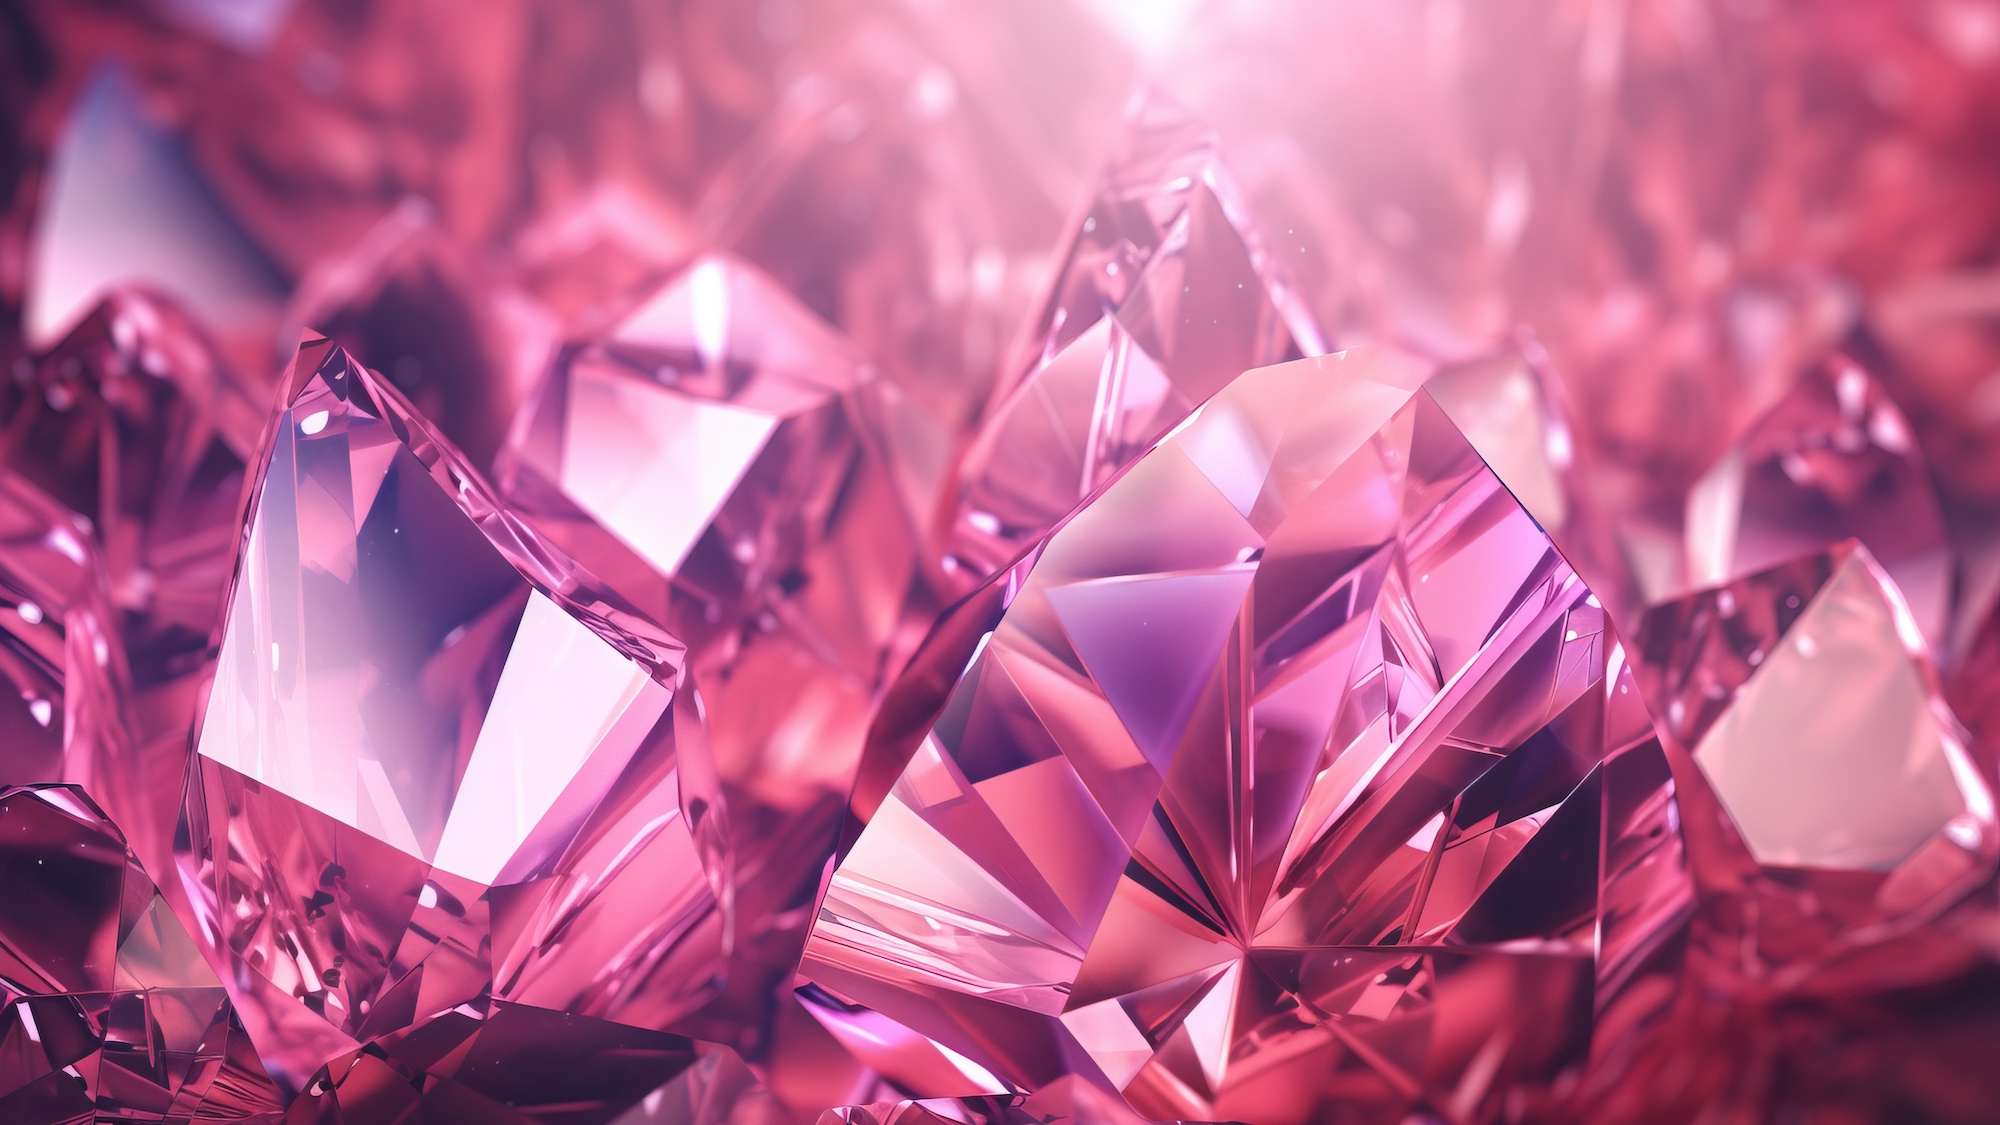 Gros plan sur des diamants roses. Image générée par une IA. © Nadia, Adobe Stock